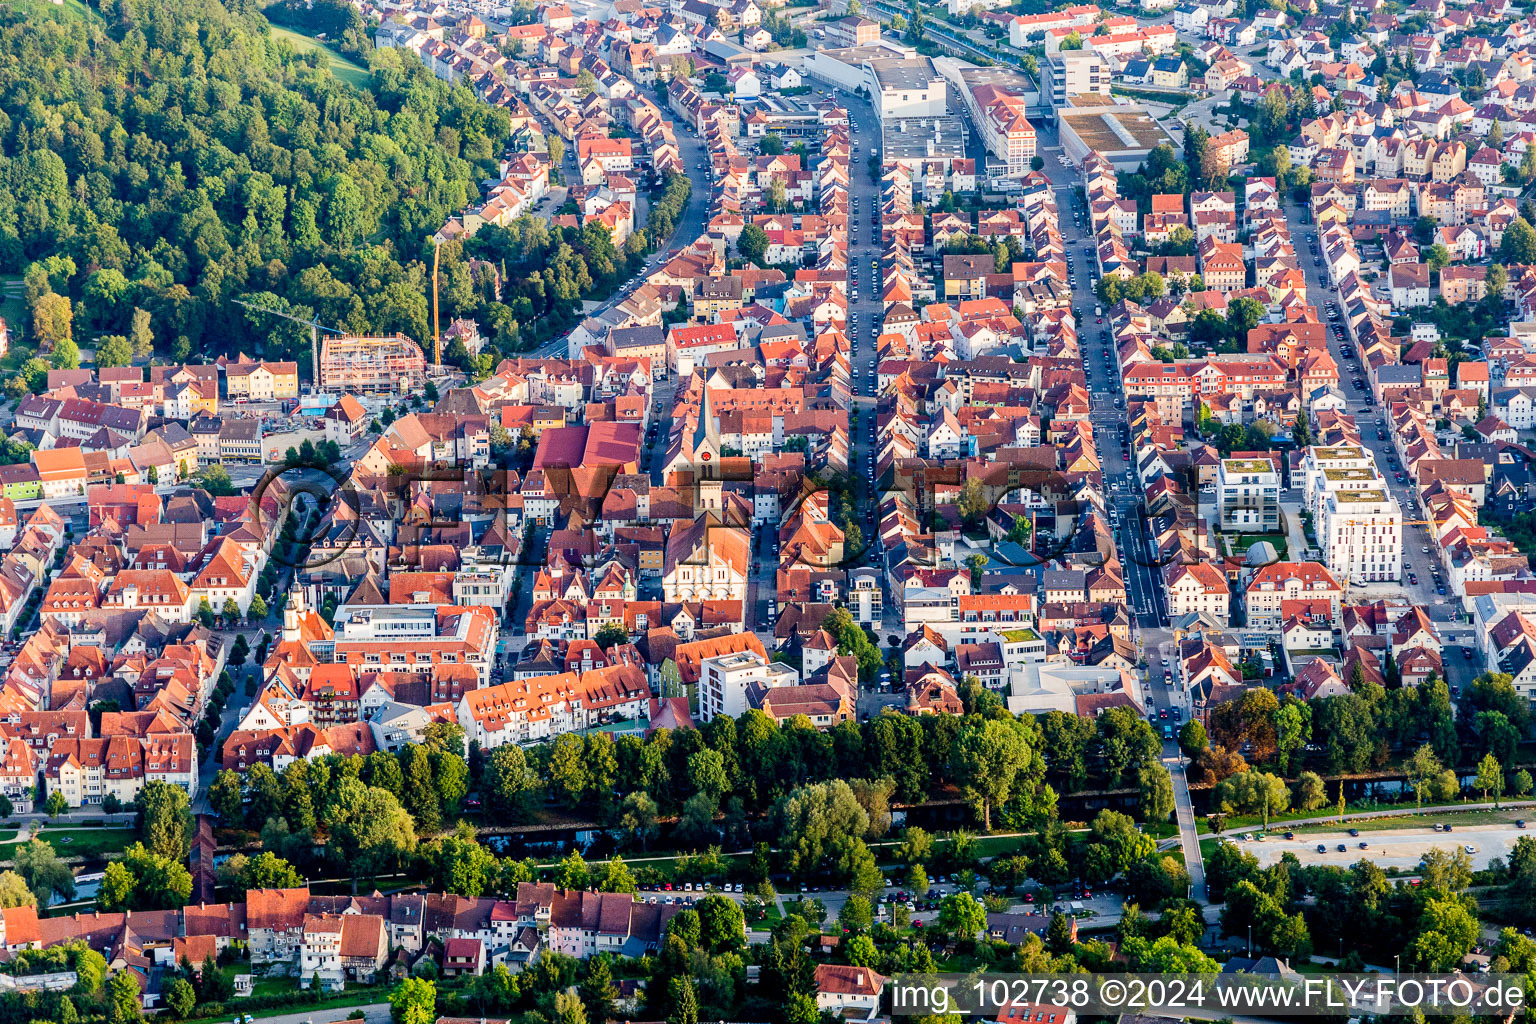 Stadtansicht des Innenstadtbereiches in Tuttlingen im Bundesland Baden-Württemberg, Deutschland